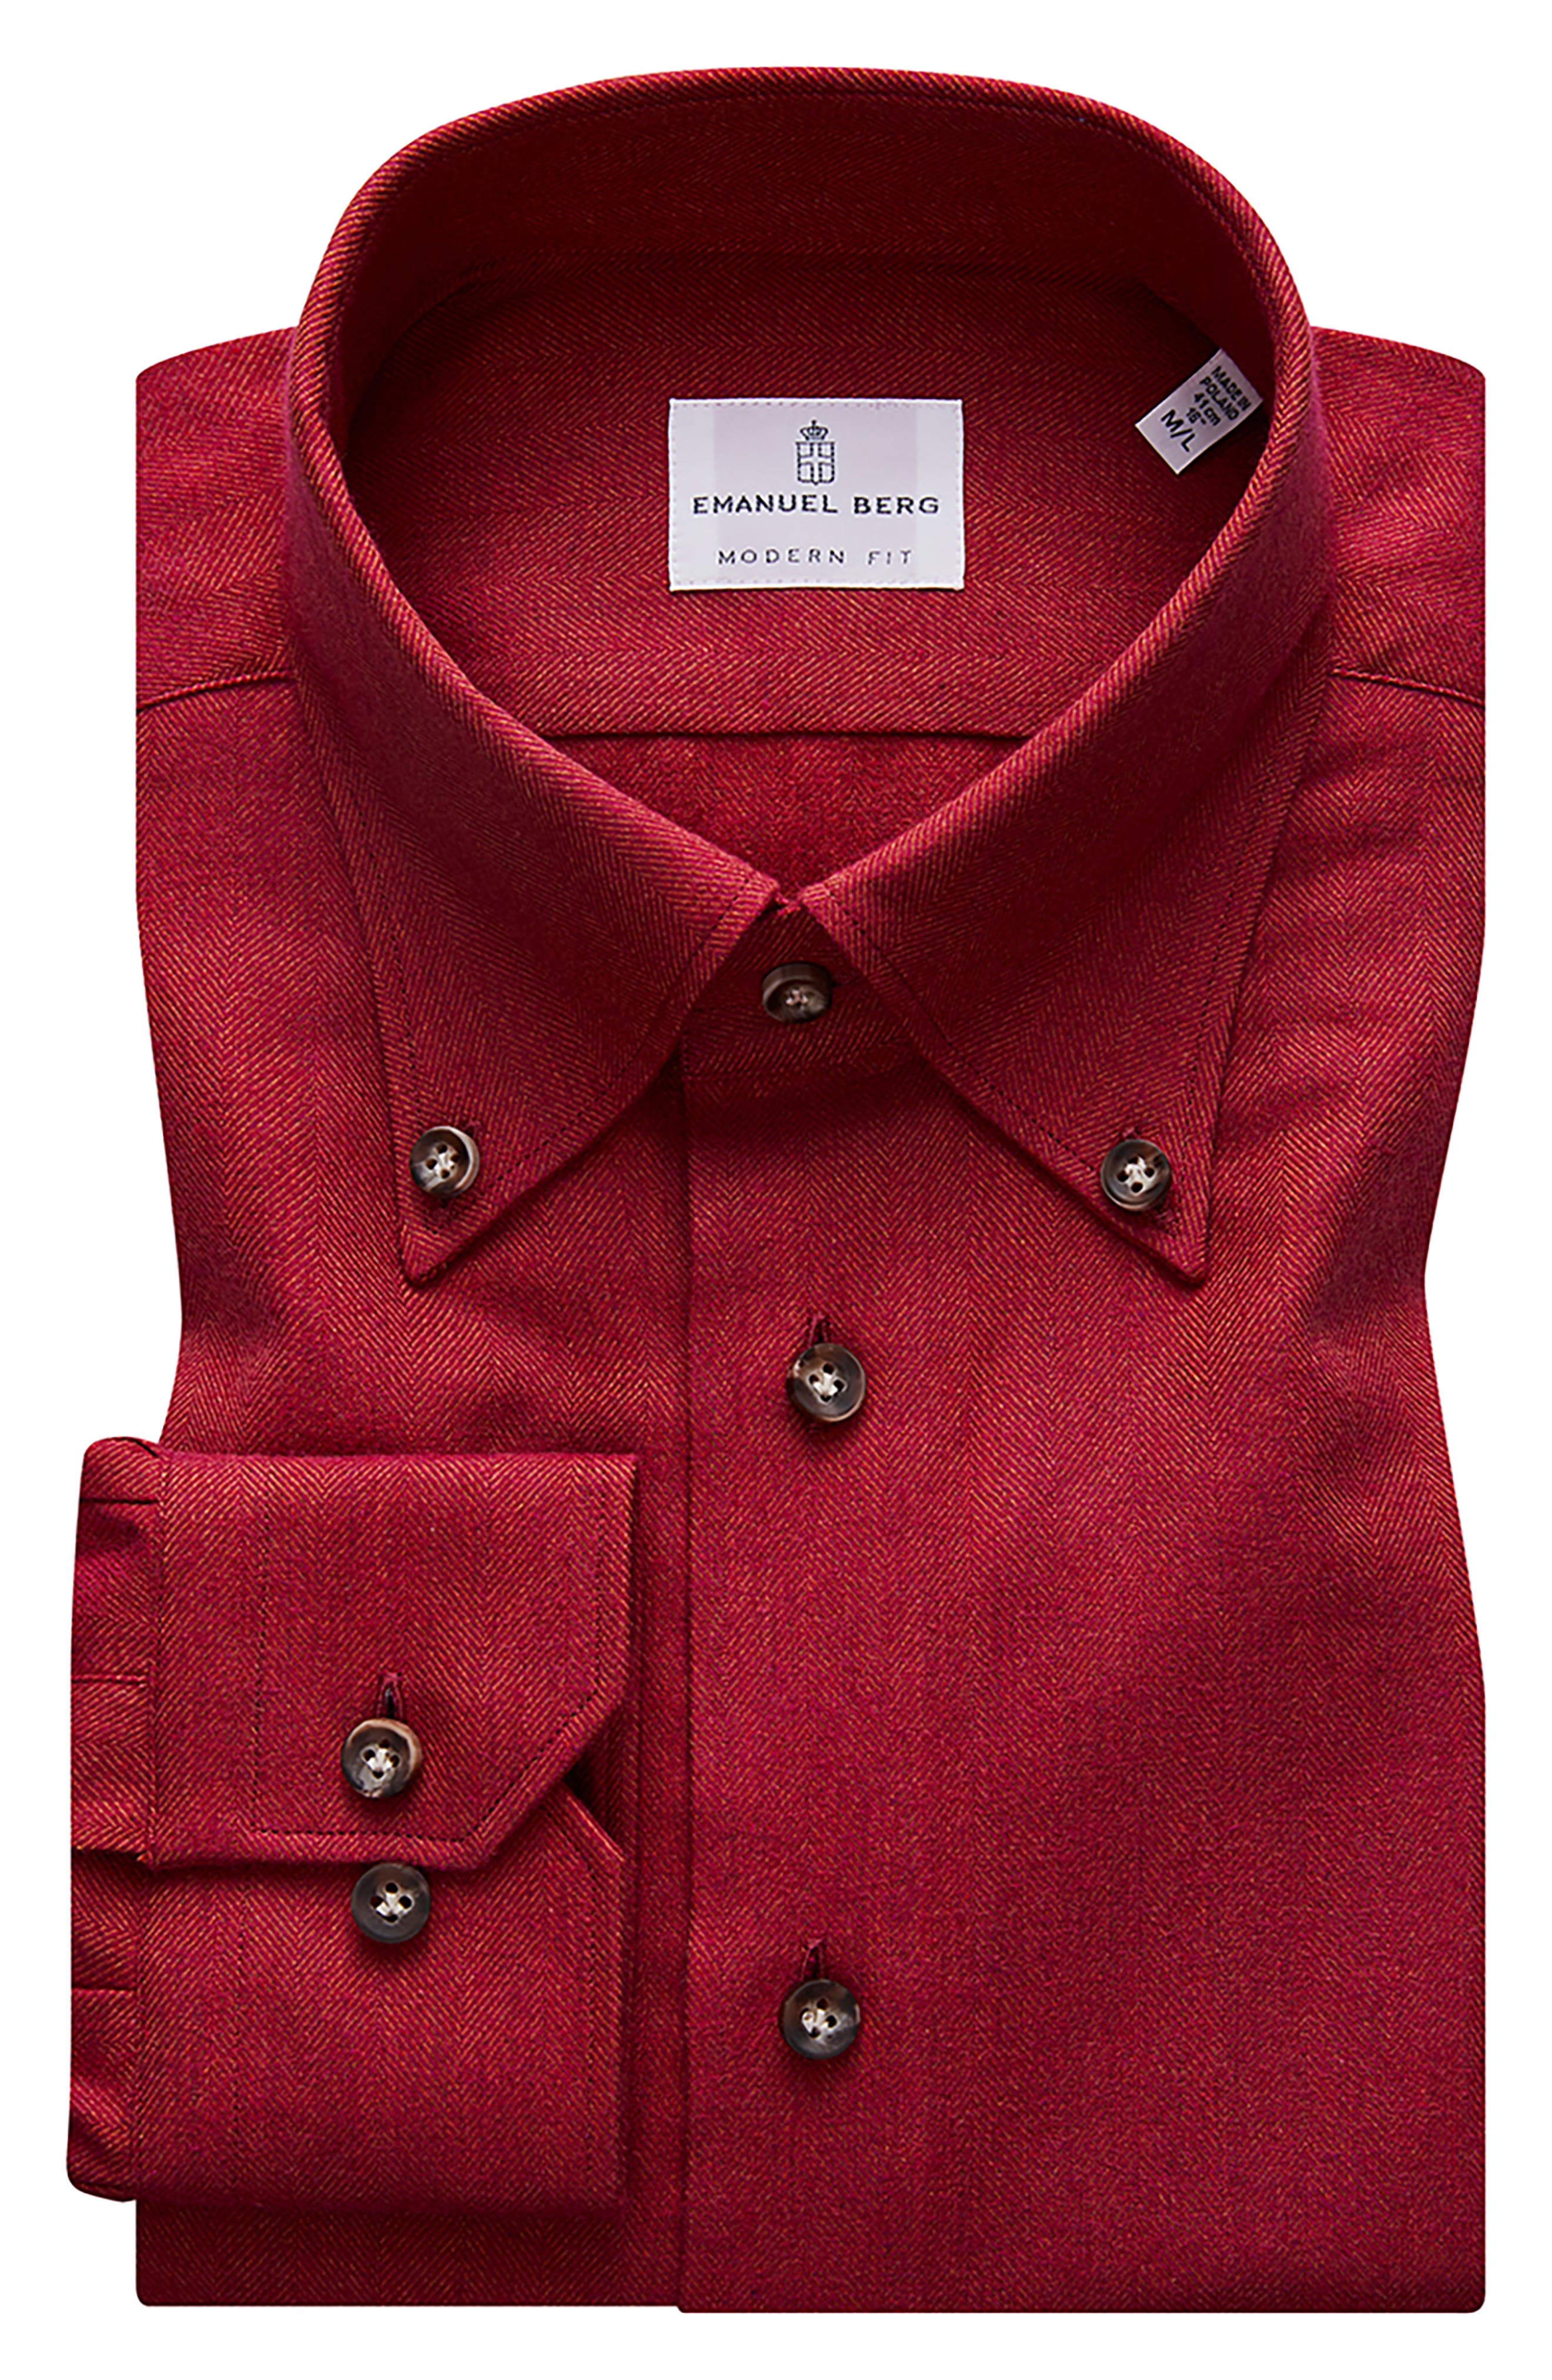 Emanuel Berg Herringbone Flannel Modern Fit Shirt in Red at Nordstrom